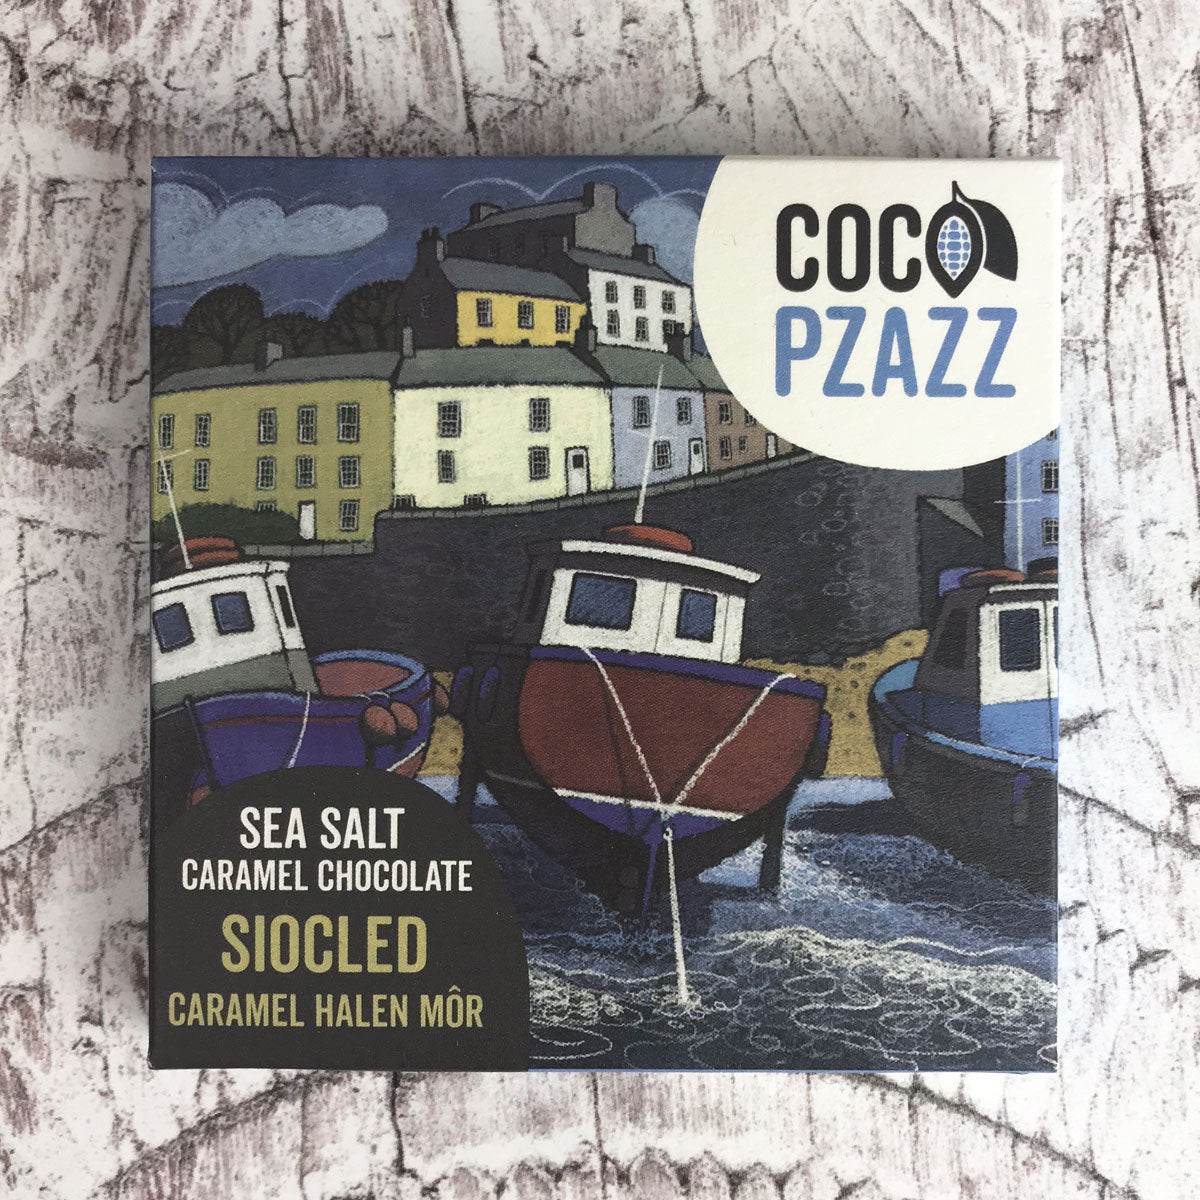 Sea Salt Caramel Chocolate by Coco Pzazz